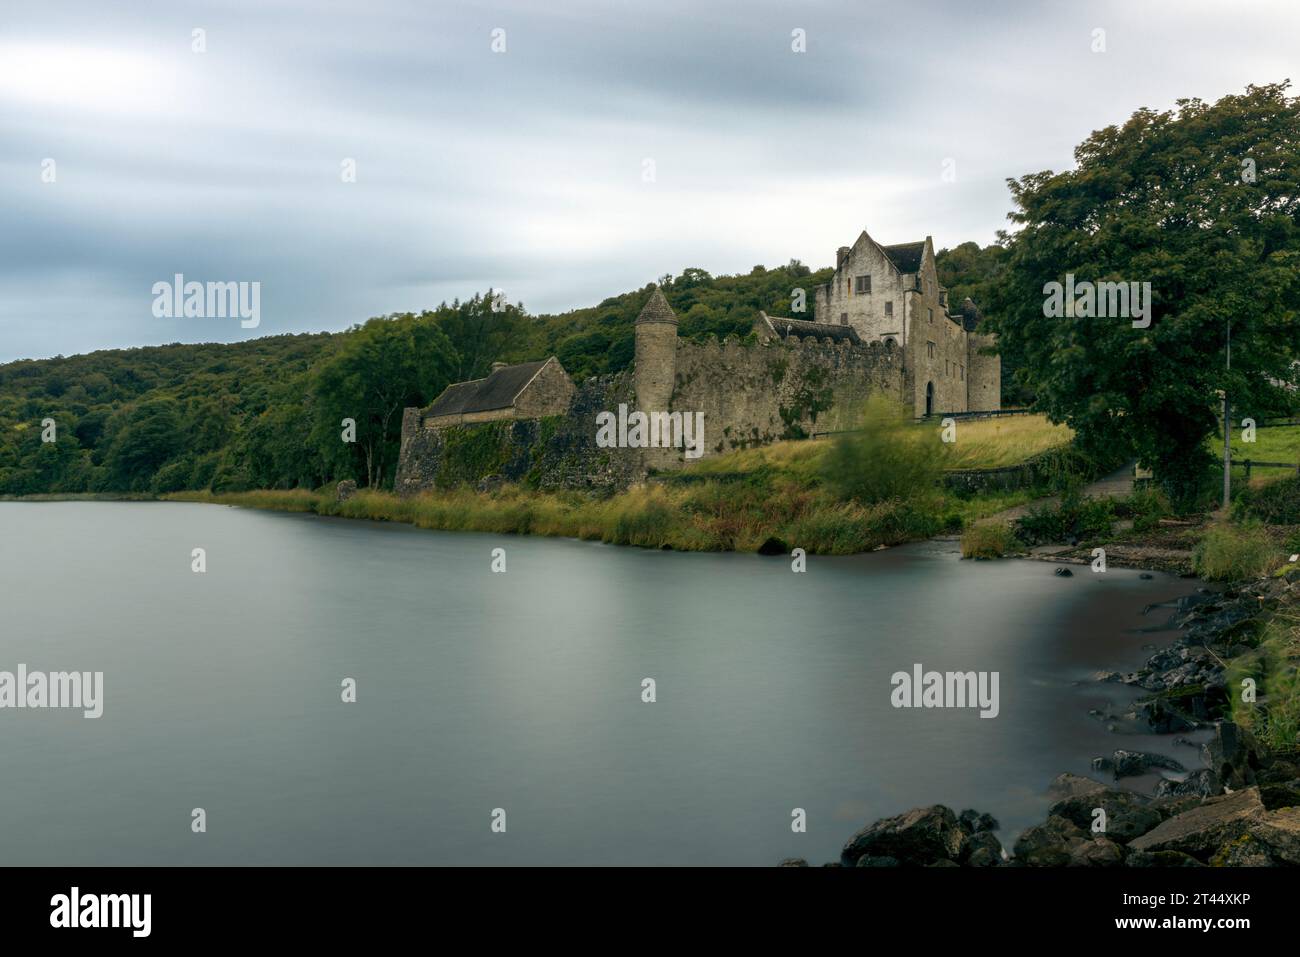 Il castello di Parke è un castello del XVII secolo situato sulle rive del Lough Gill nella contea di Leitrim, in Irlanda. Foto Stock